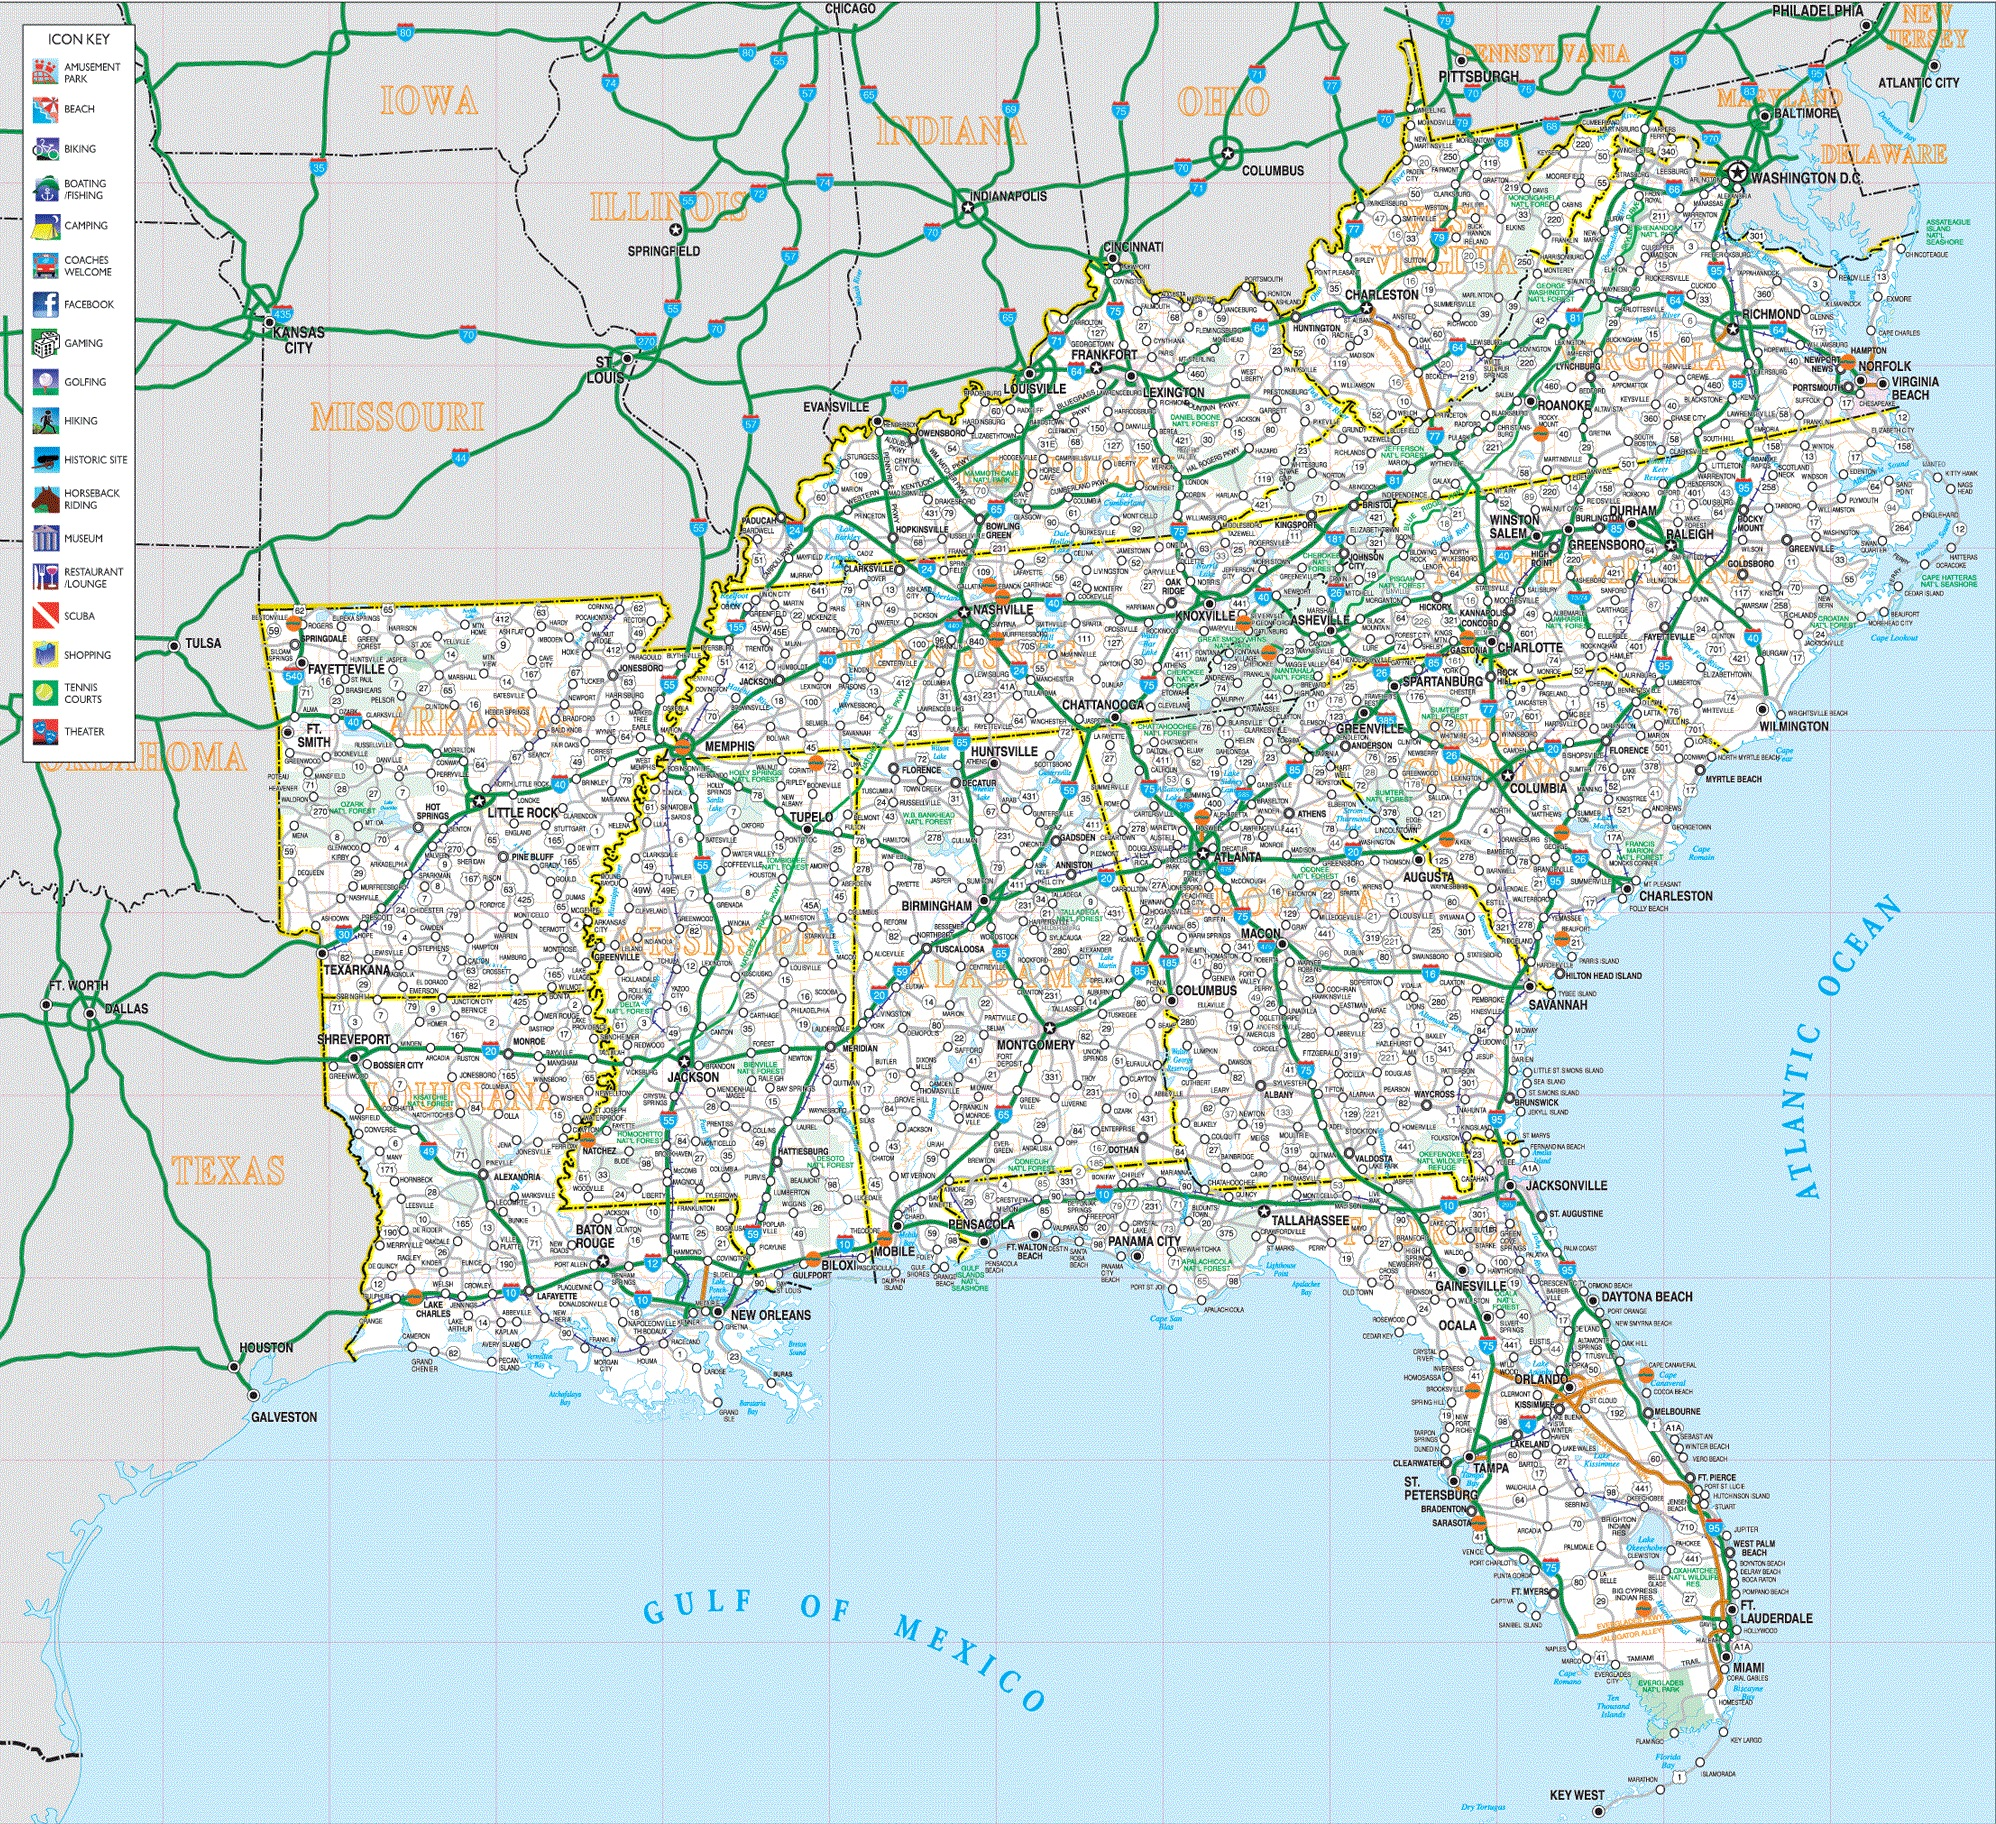 Road Map of Southeast U.S